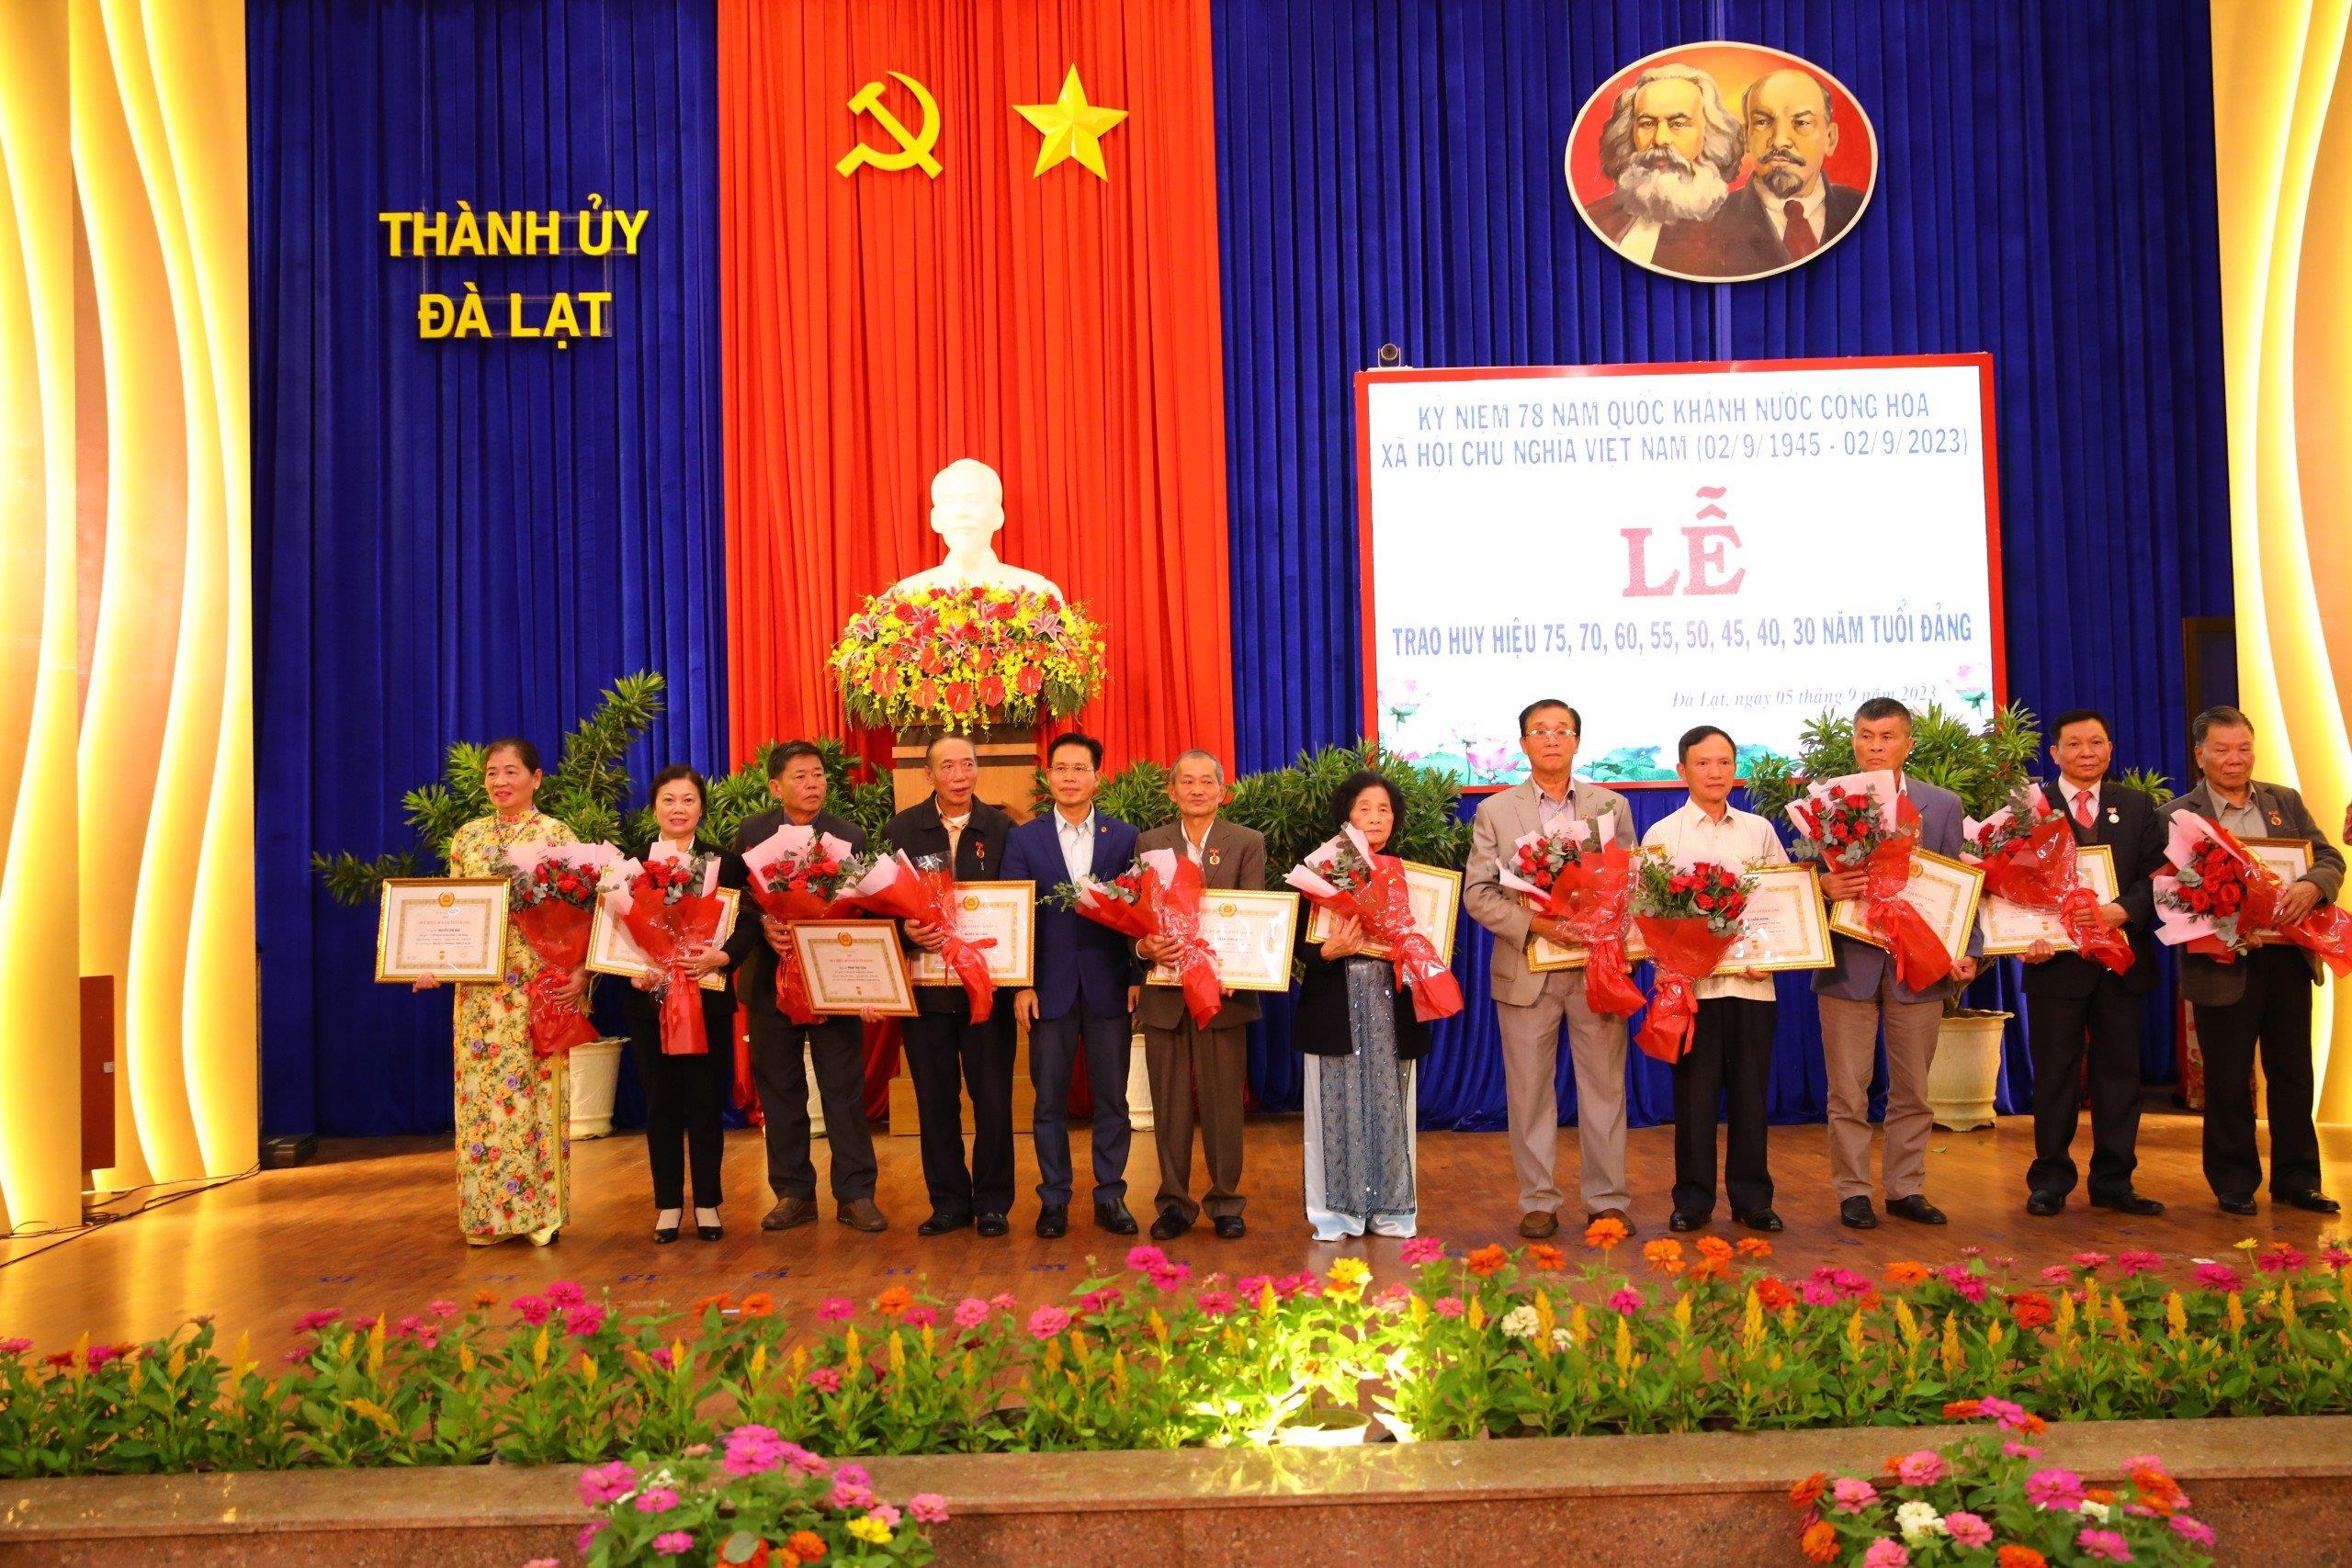 Đồng chí Trần Trung Hiếu – Phó Trưởng ban Tuyên giáo Tỉnh ủy, trao huy hiệu Đảng cho Đảng viên cao niên